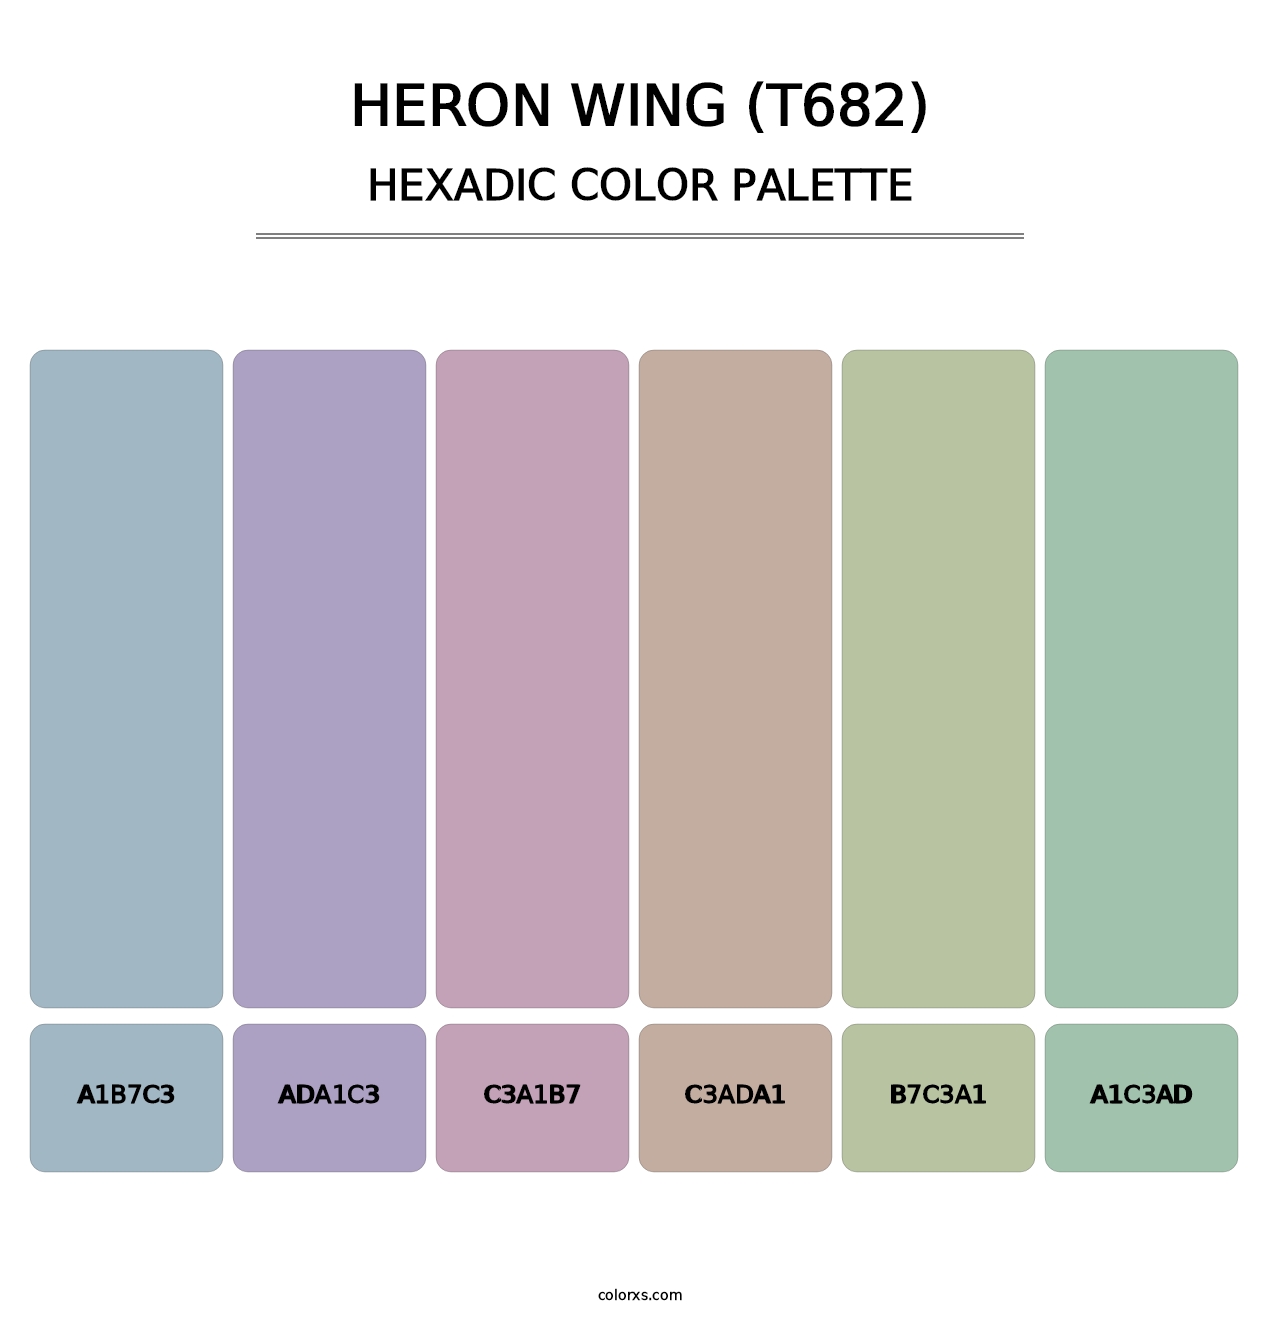 Heron Wing (T682) - Hexadic Color Palette